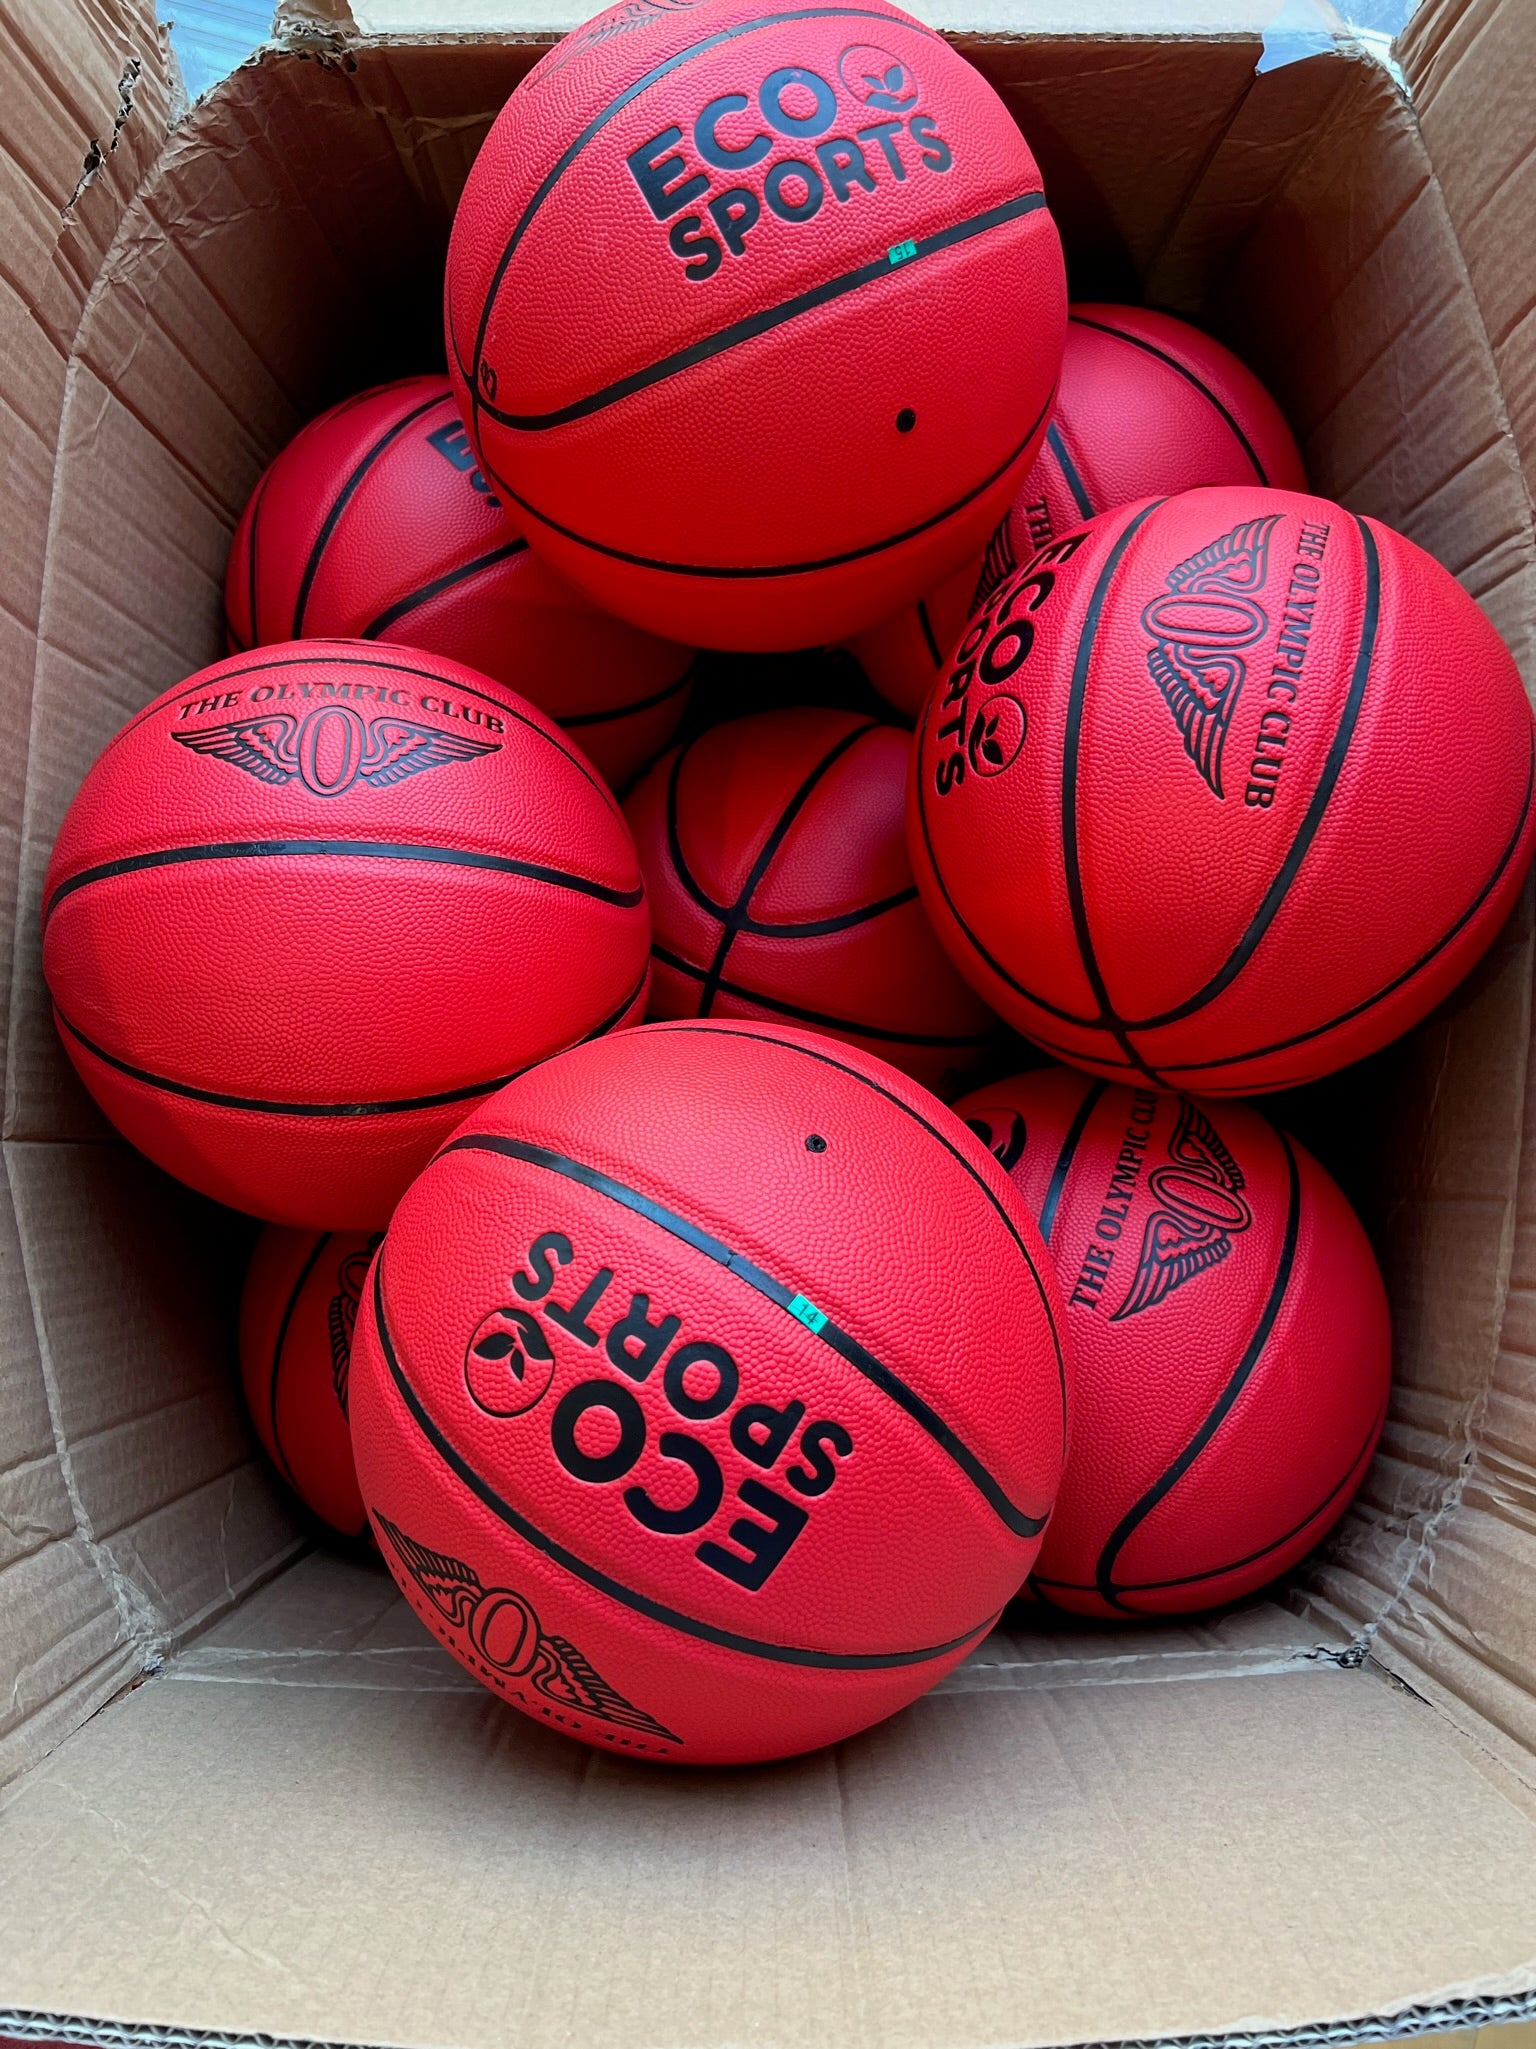 Cheap Branded Basketballs